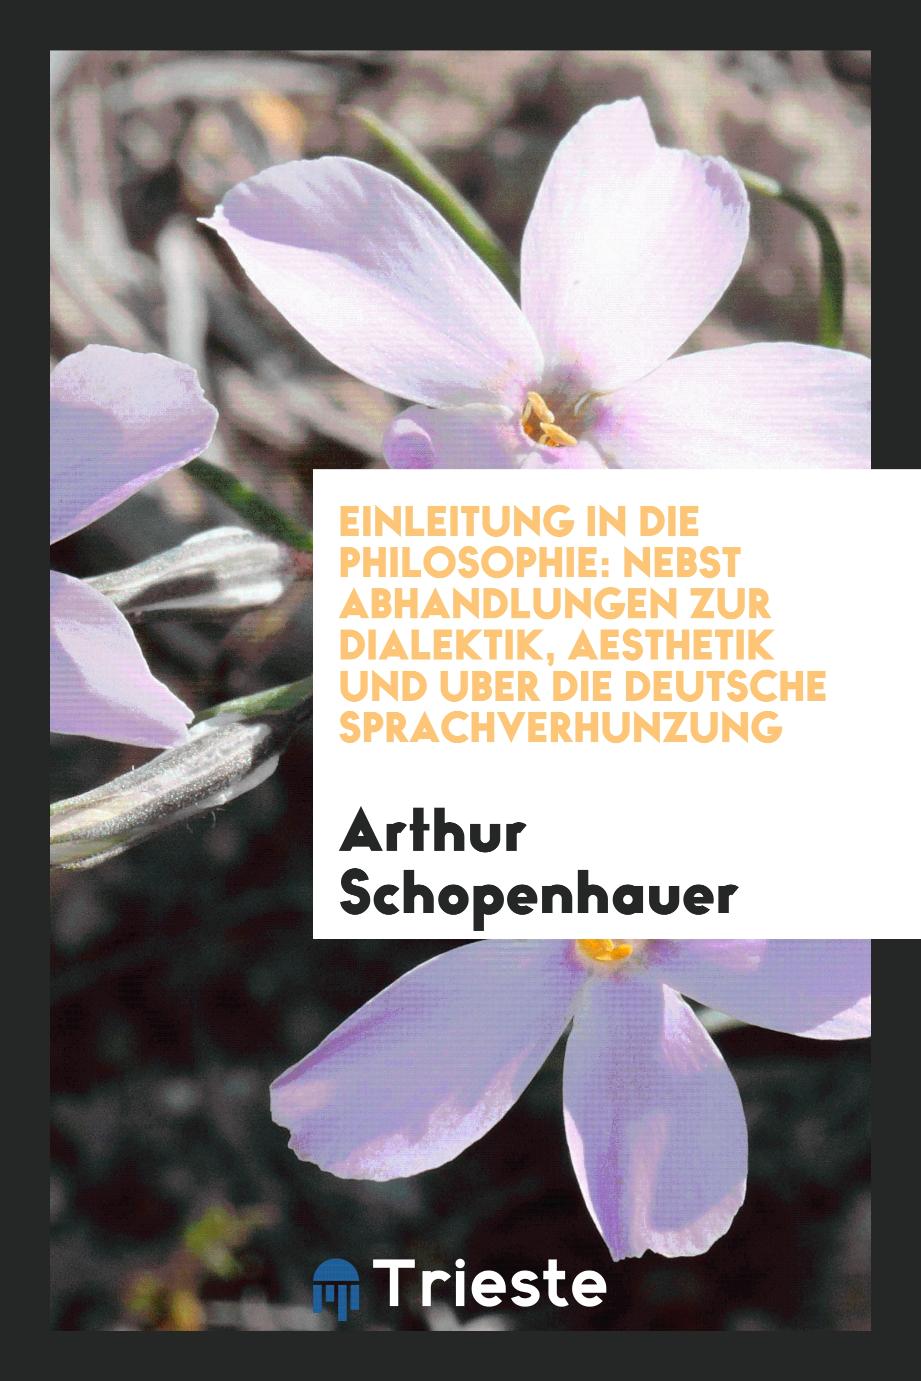 Einleitung in die Philosophie: nebst Abhandlungen zur Dialektik, Aesthetik und uber die deutsche Sprachverhunzung